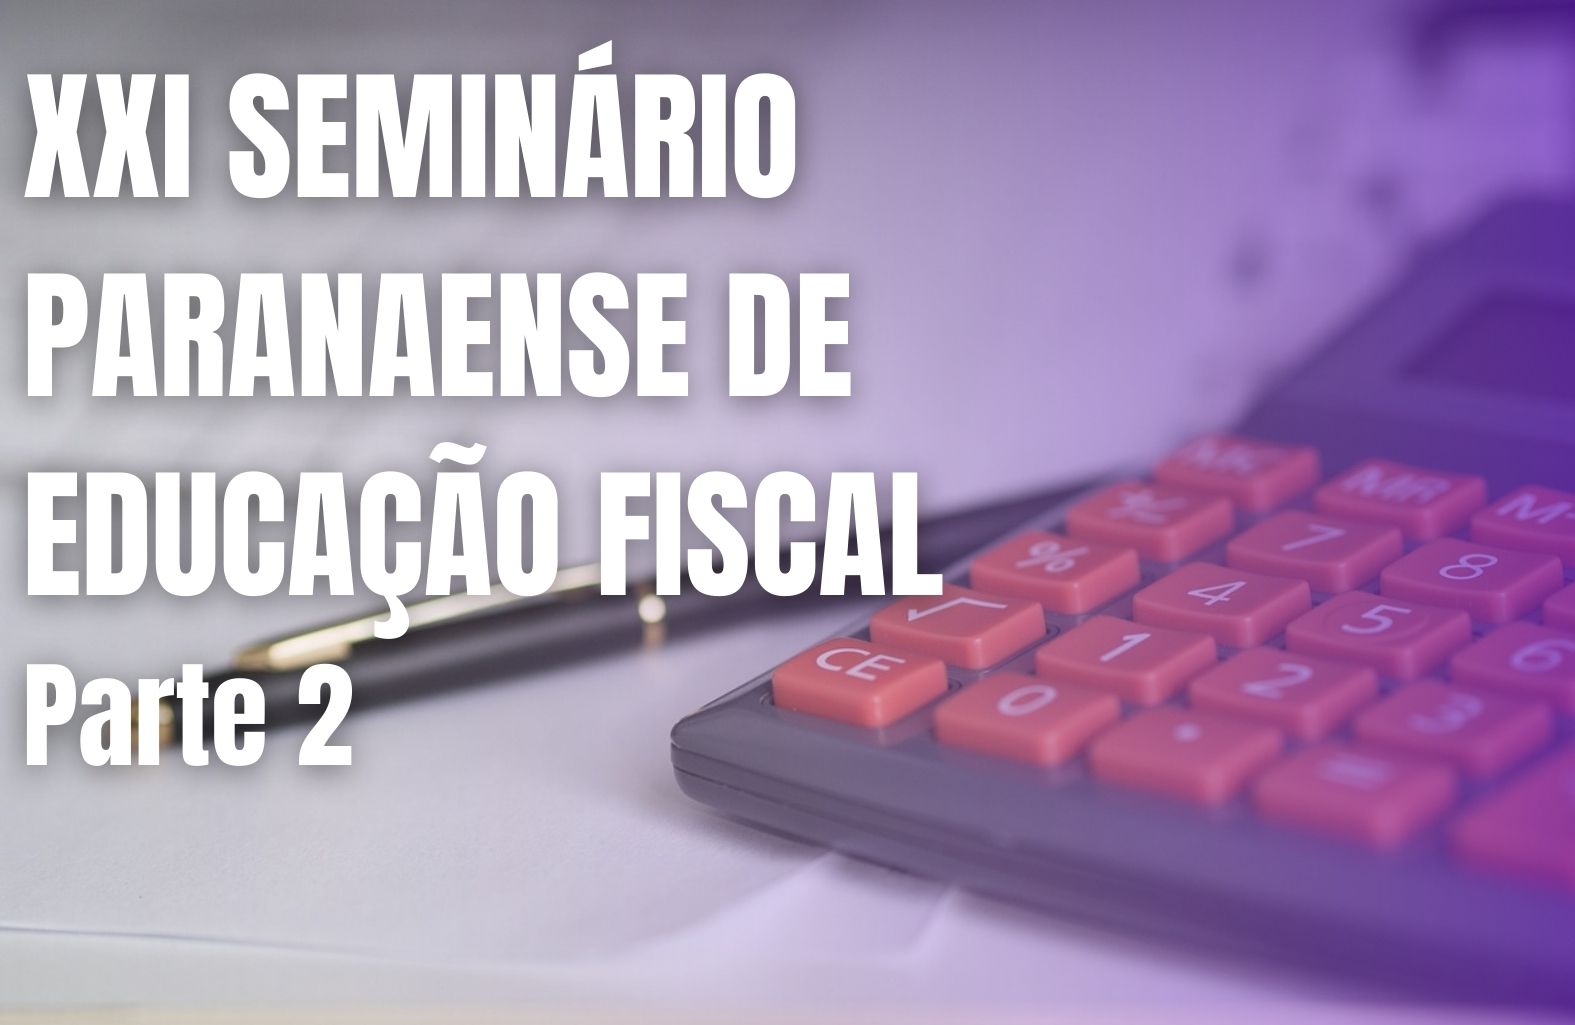 Parte 2 - XXI Seminário Paranaense de Educação Fiscal